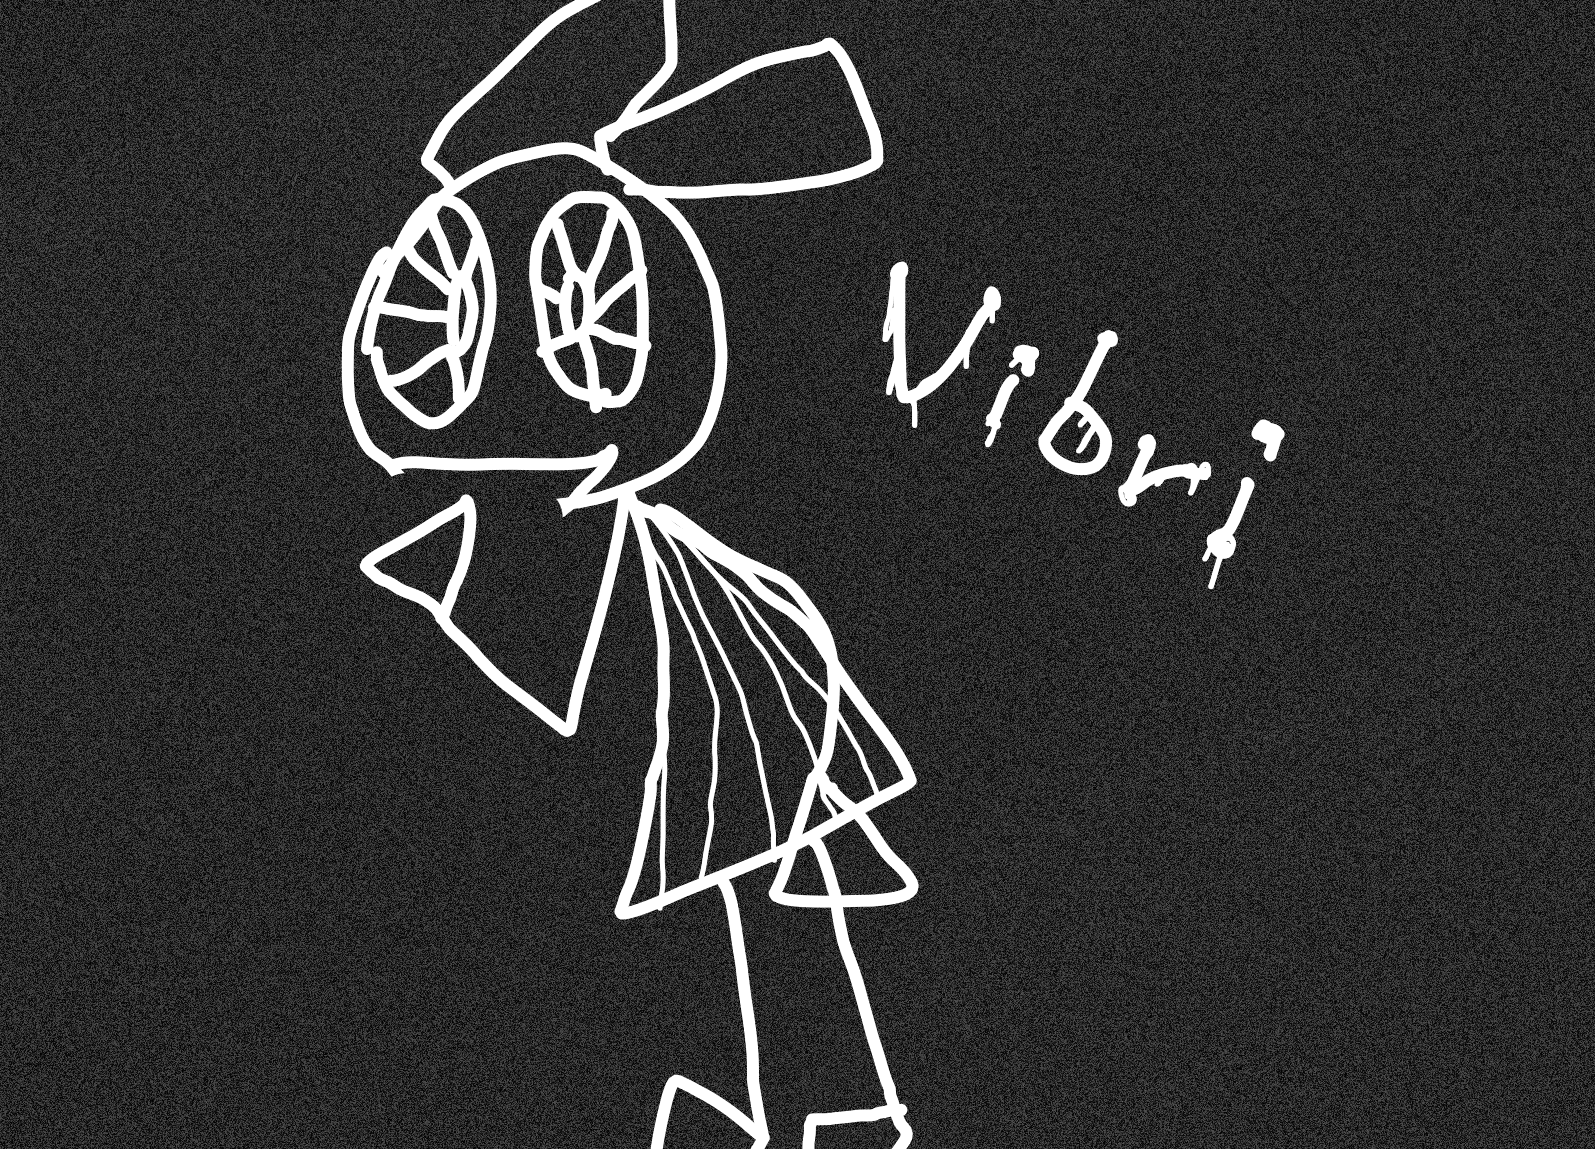 Vib-Rihon (Vib-Ribbon art book), Vib-Ribbon Wikia